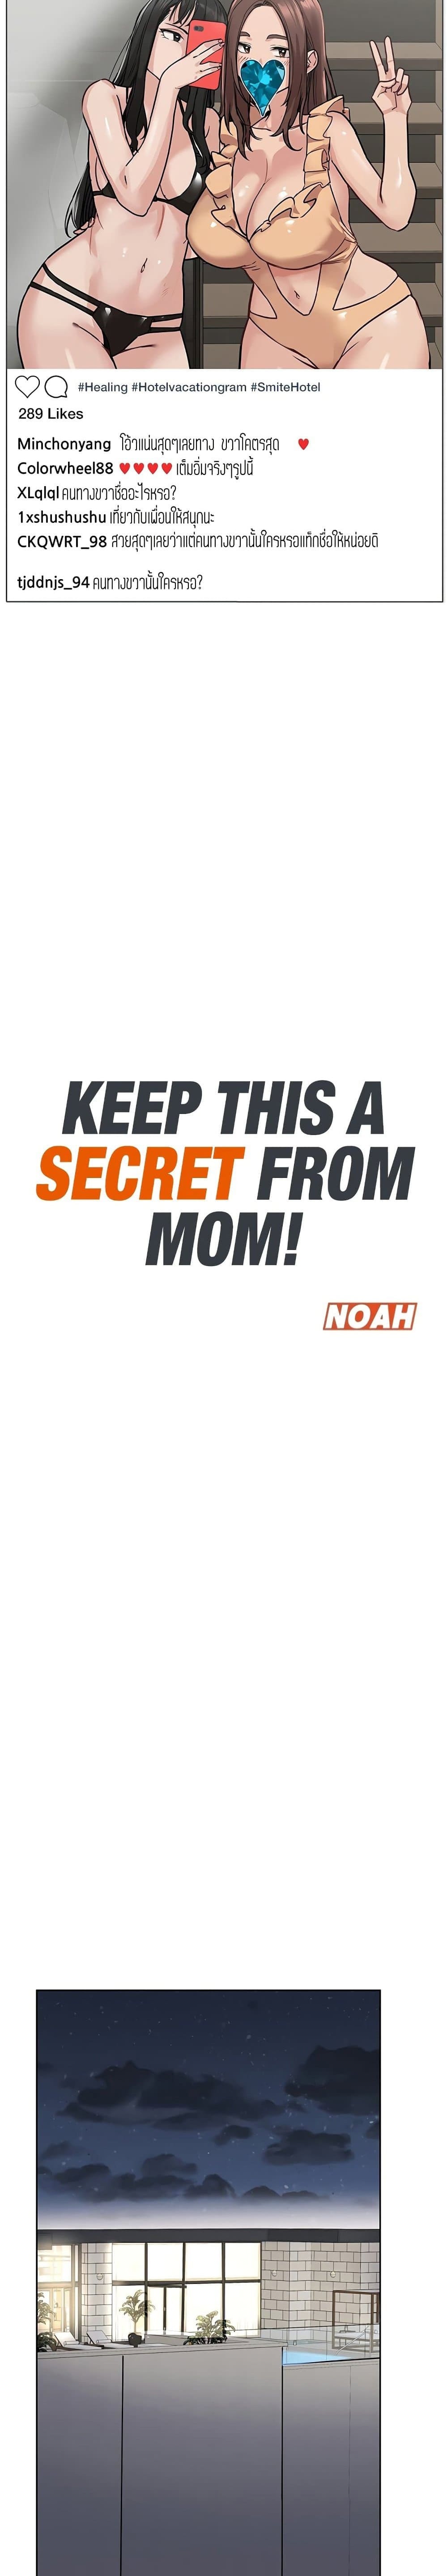 เก็บมันไว้เป็นความลับระหว่างแม่ของเธอนะ! 42 ภาพ 3